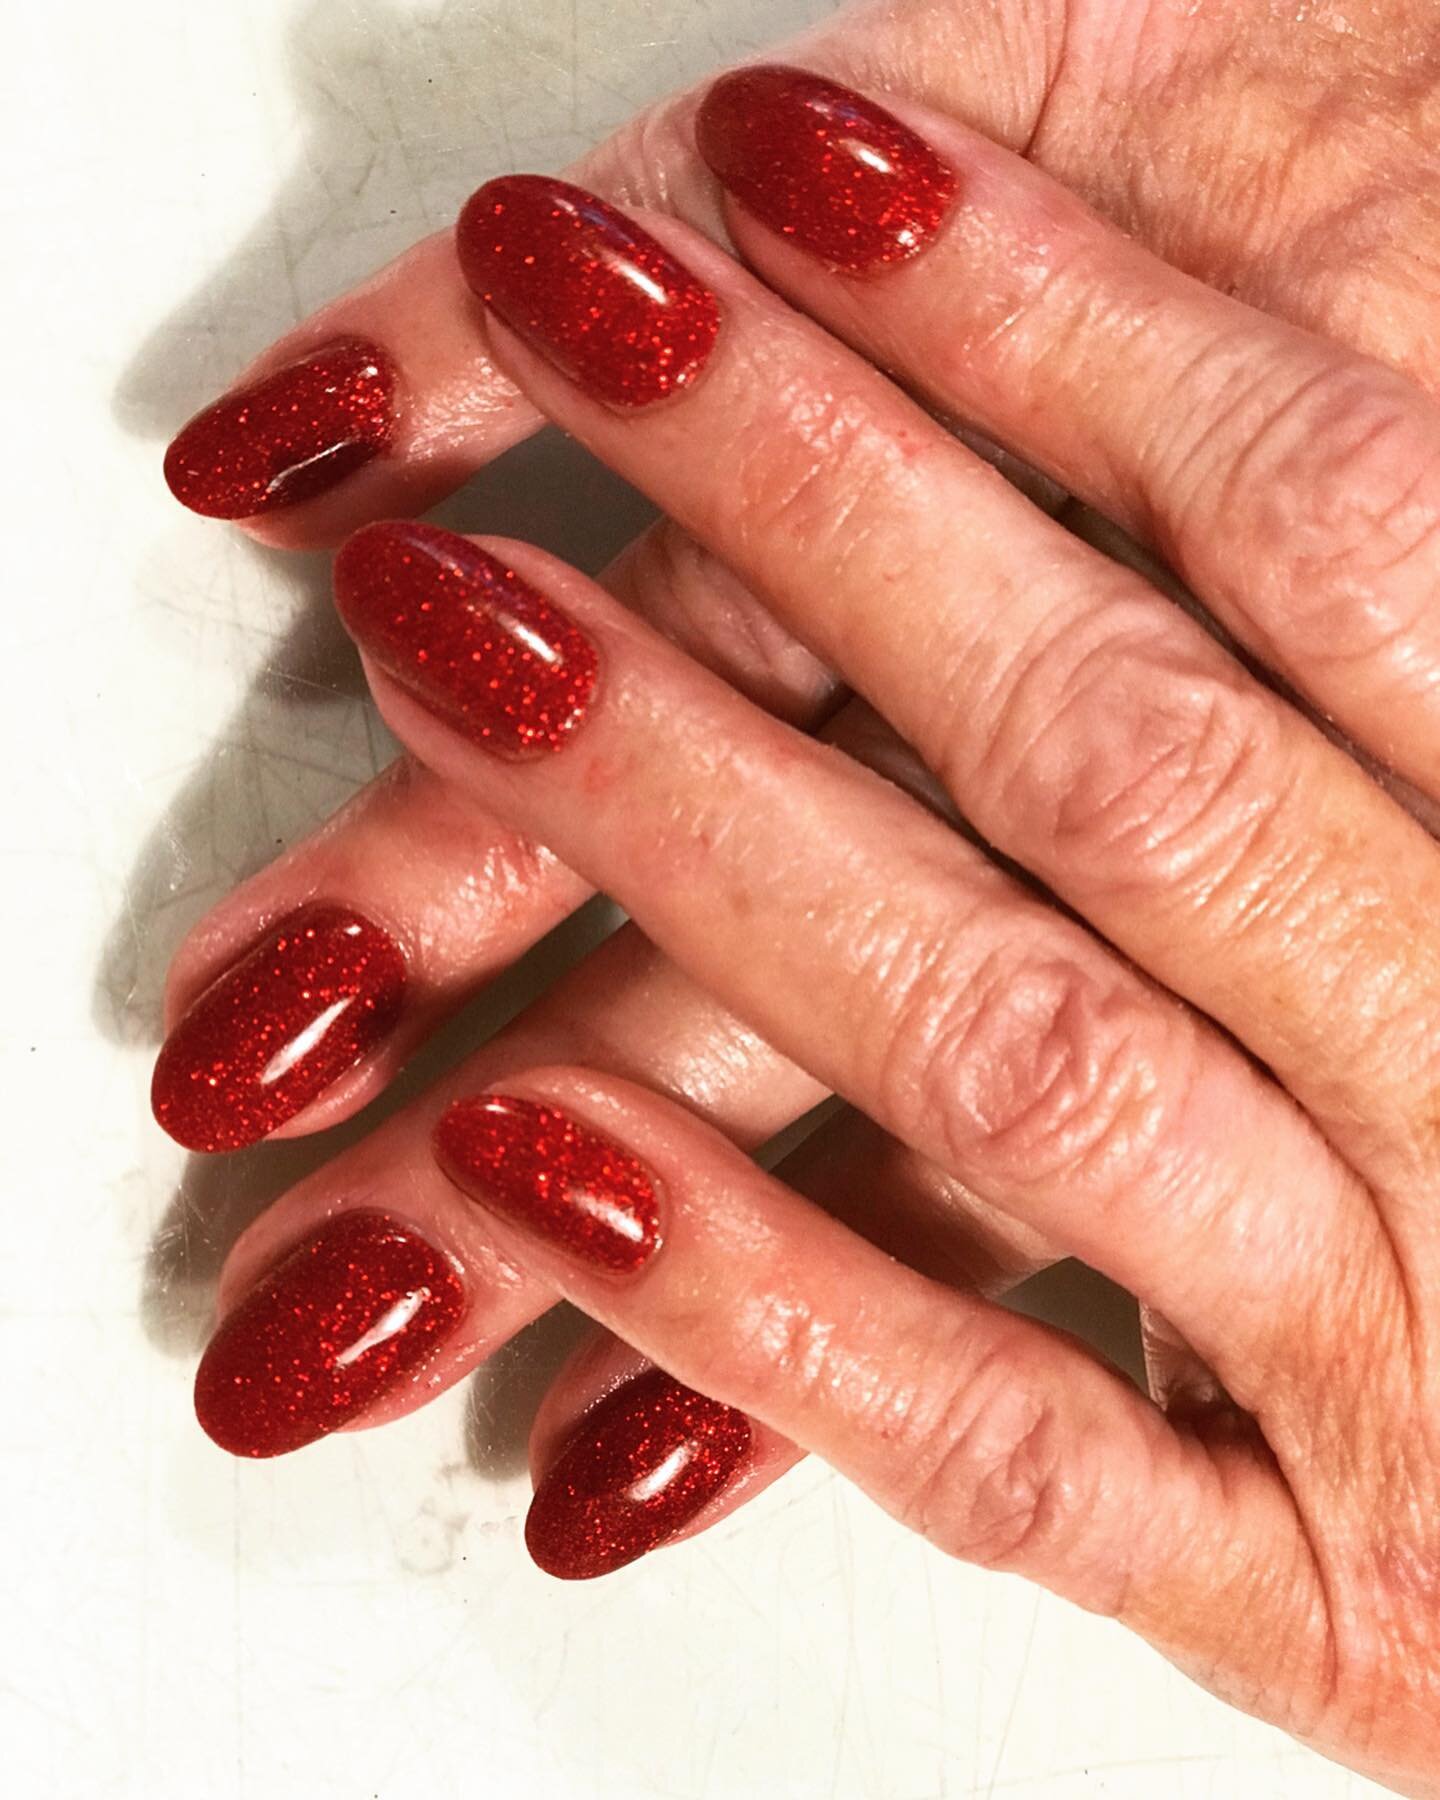 #Festivenails#redglitter#snsnails#snspowder#rednails#naturalnails#dippingnails #houseofnailsfortisgreen